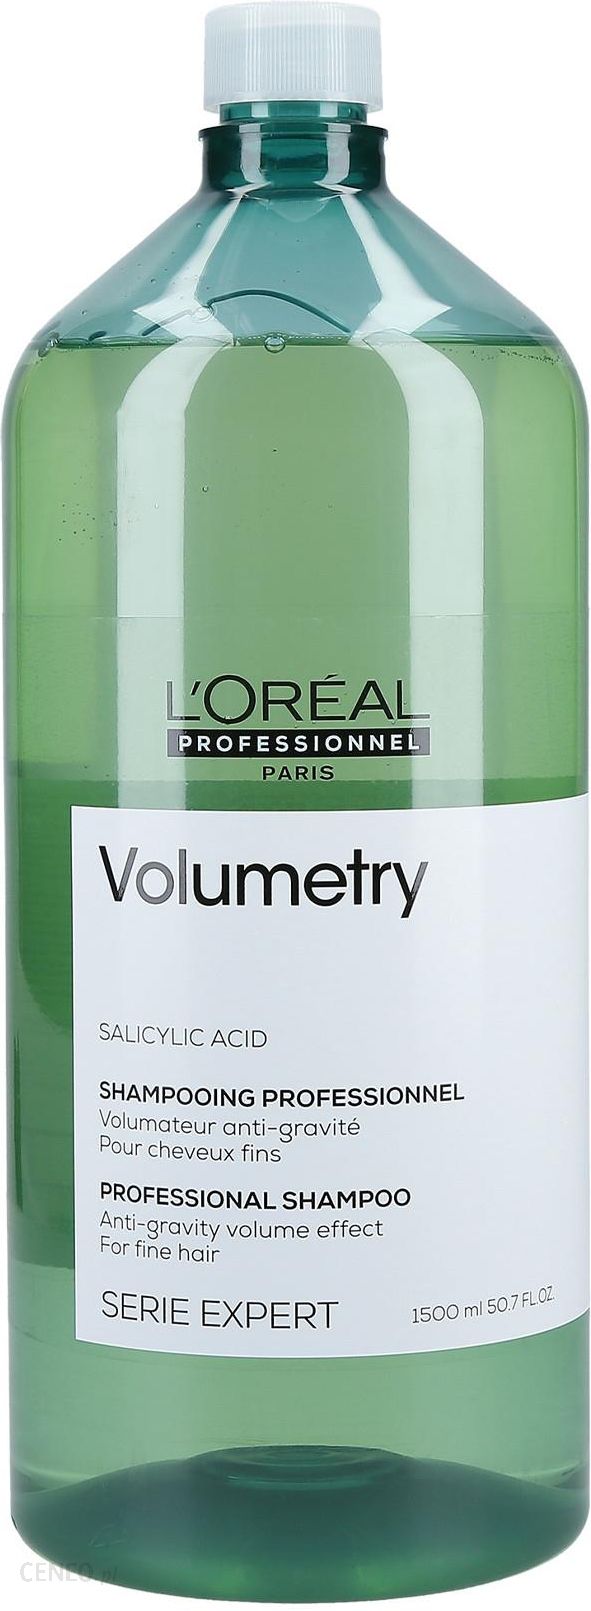 volumetry szampon do włosów nadający objętość 1500ml